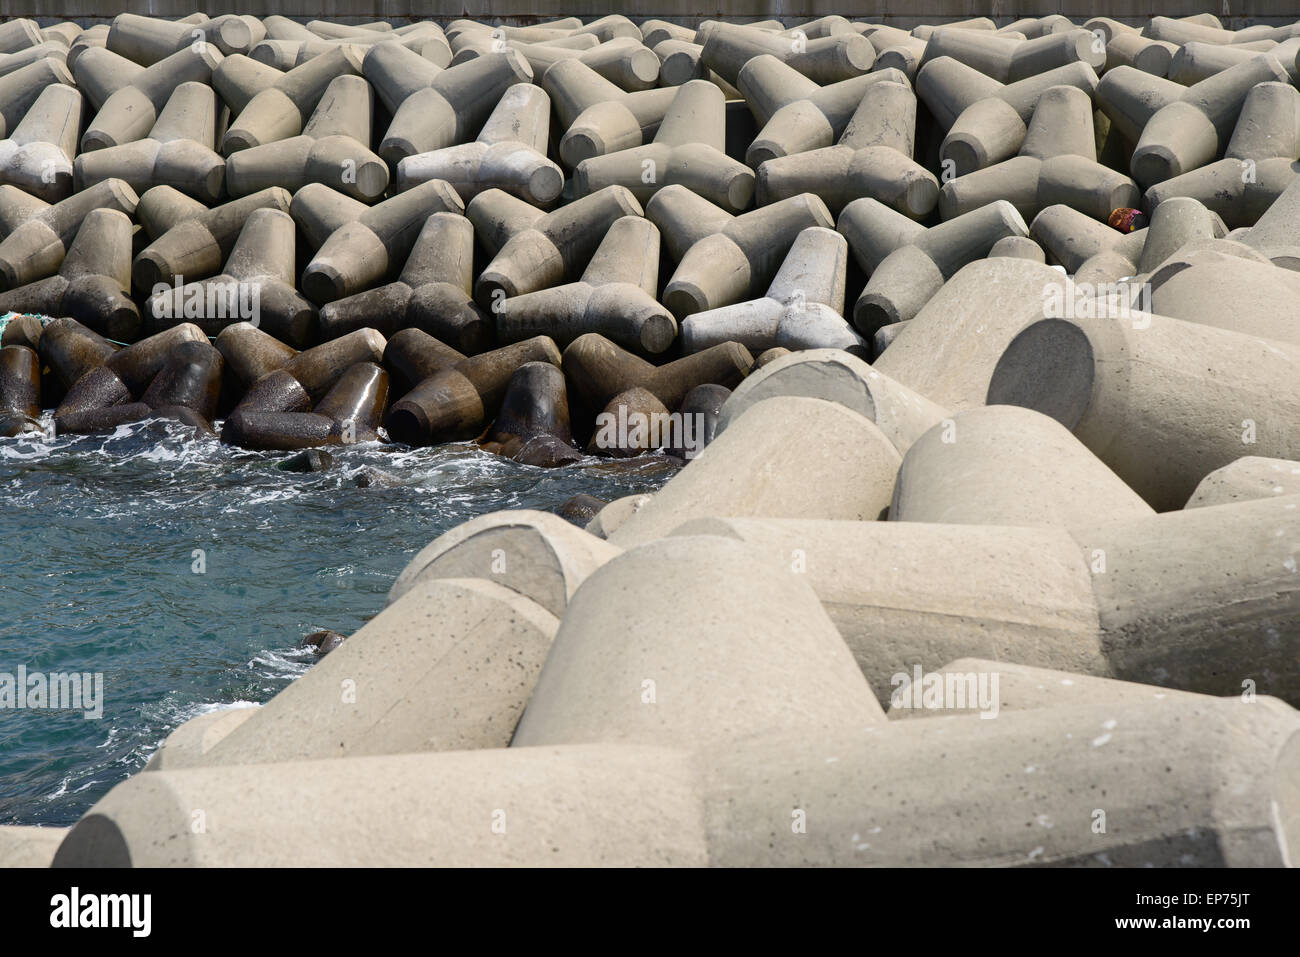 stacked tetrapod at a breakwater in Korea Stock Photo